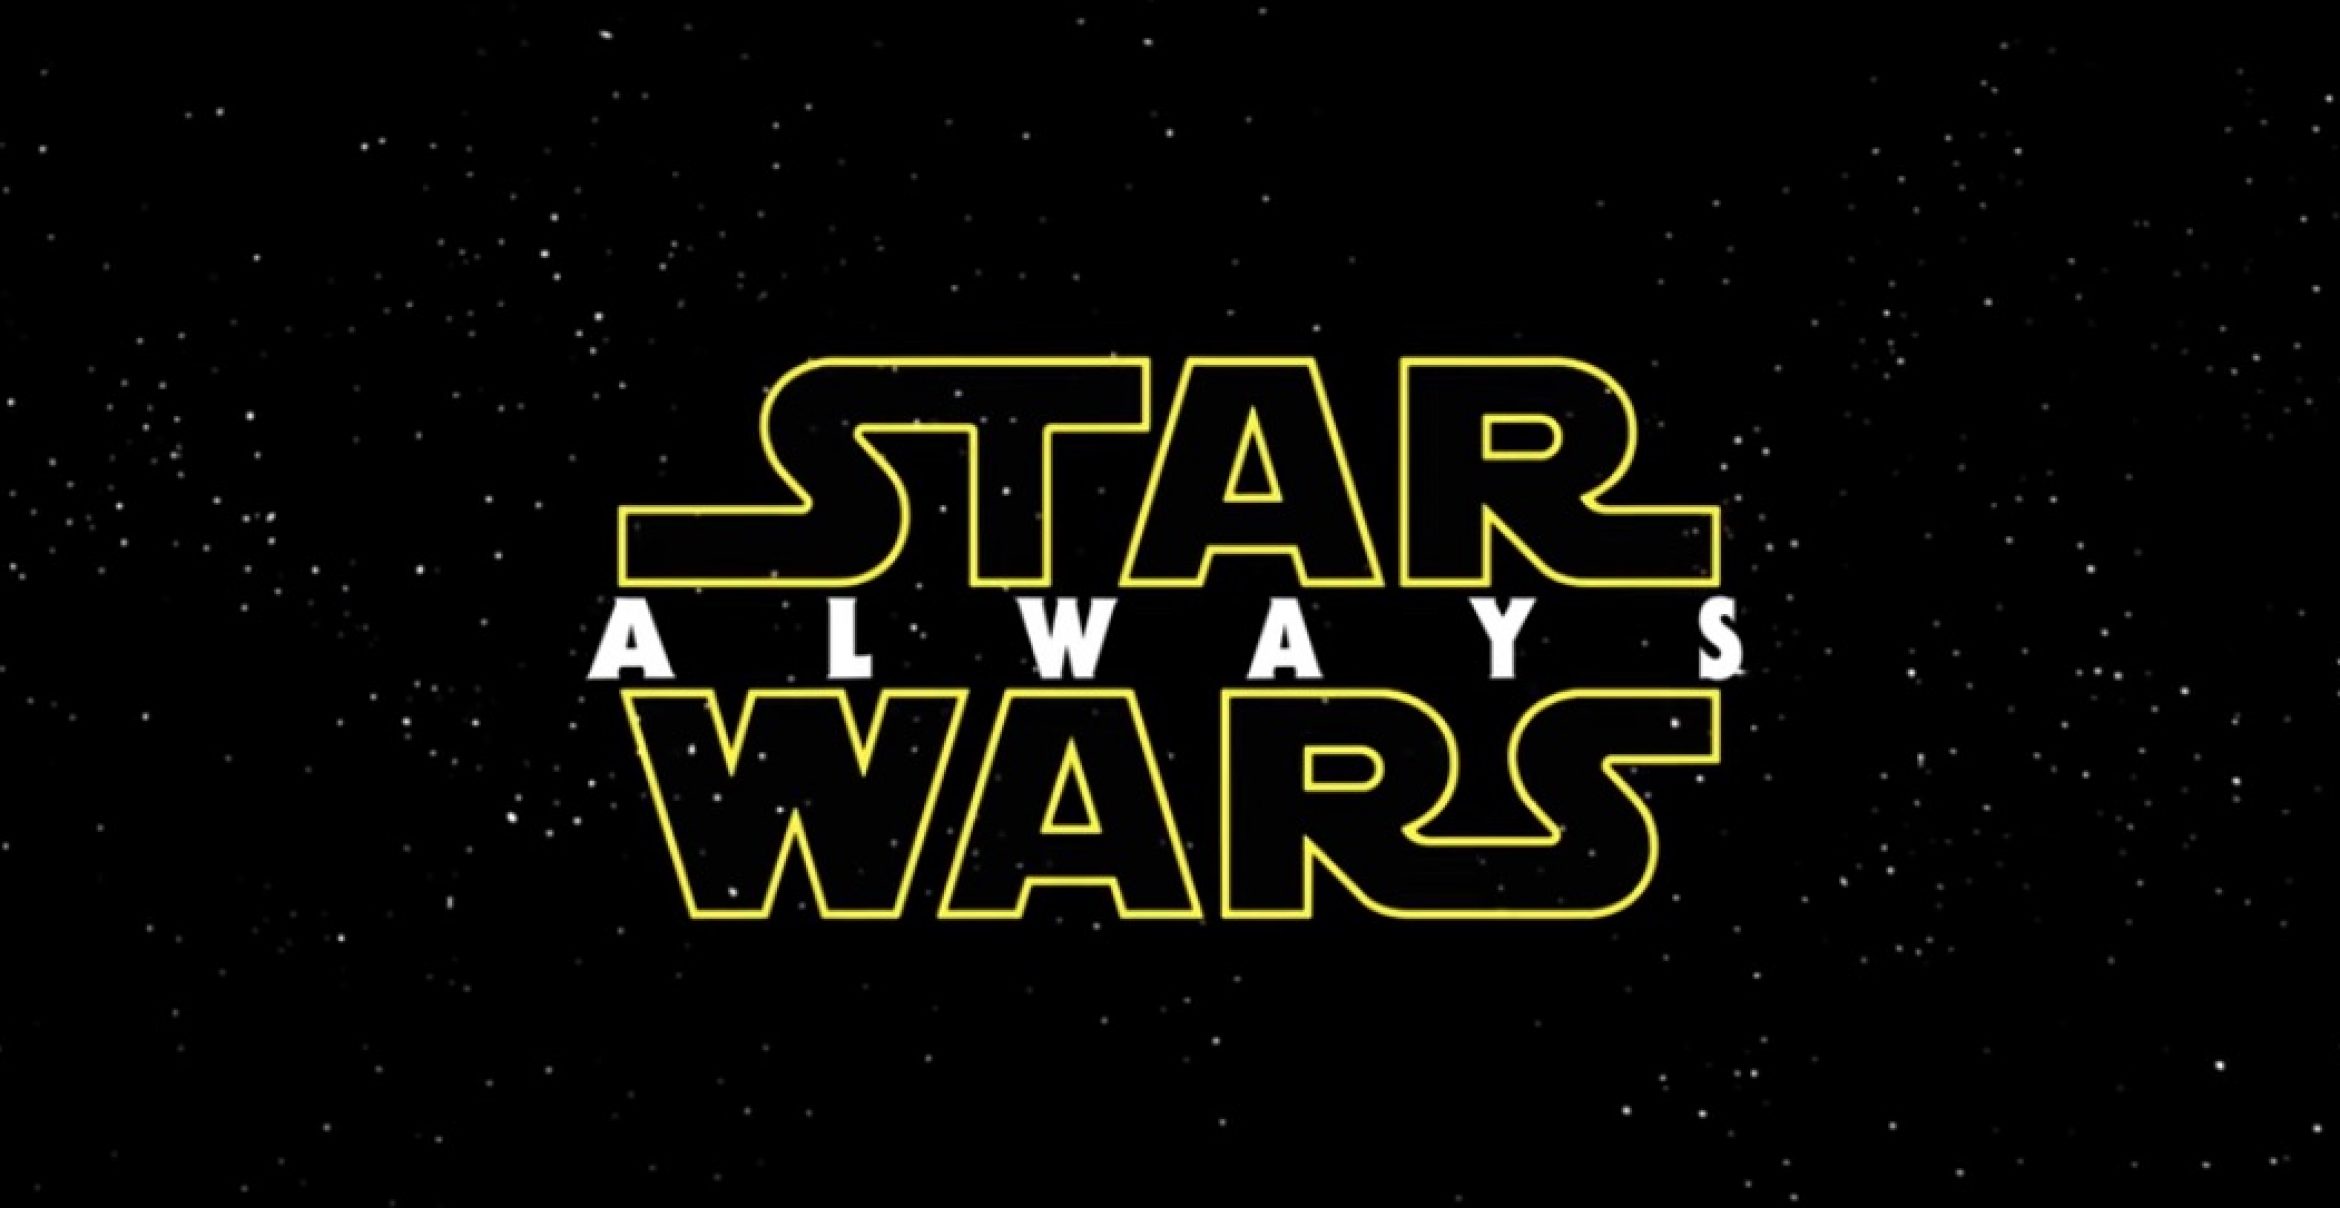 Fan bastelt aus allen zehn “Star Wars“-Filmen einen Mega-Trailer